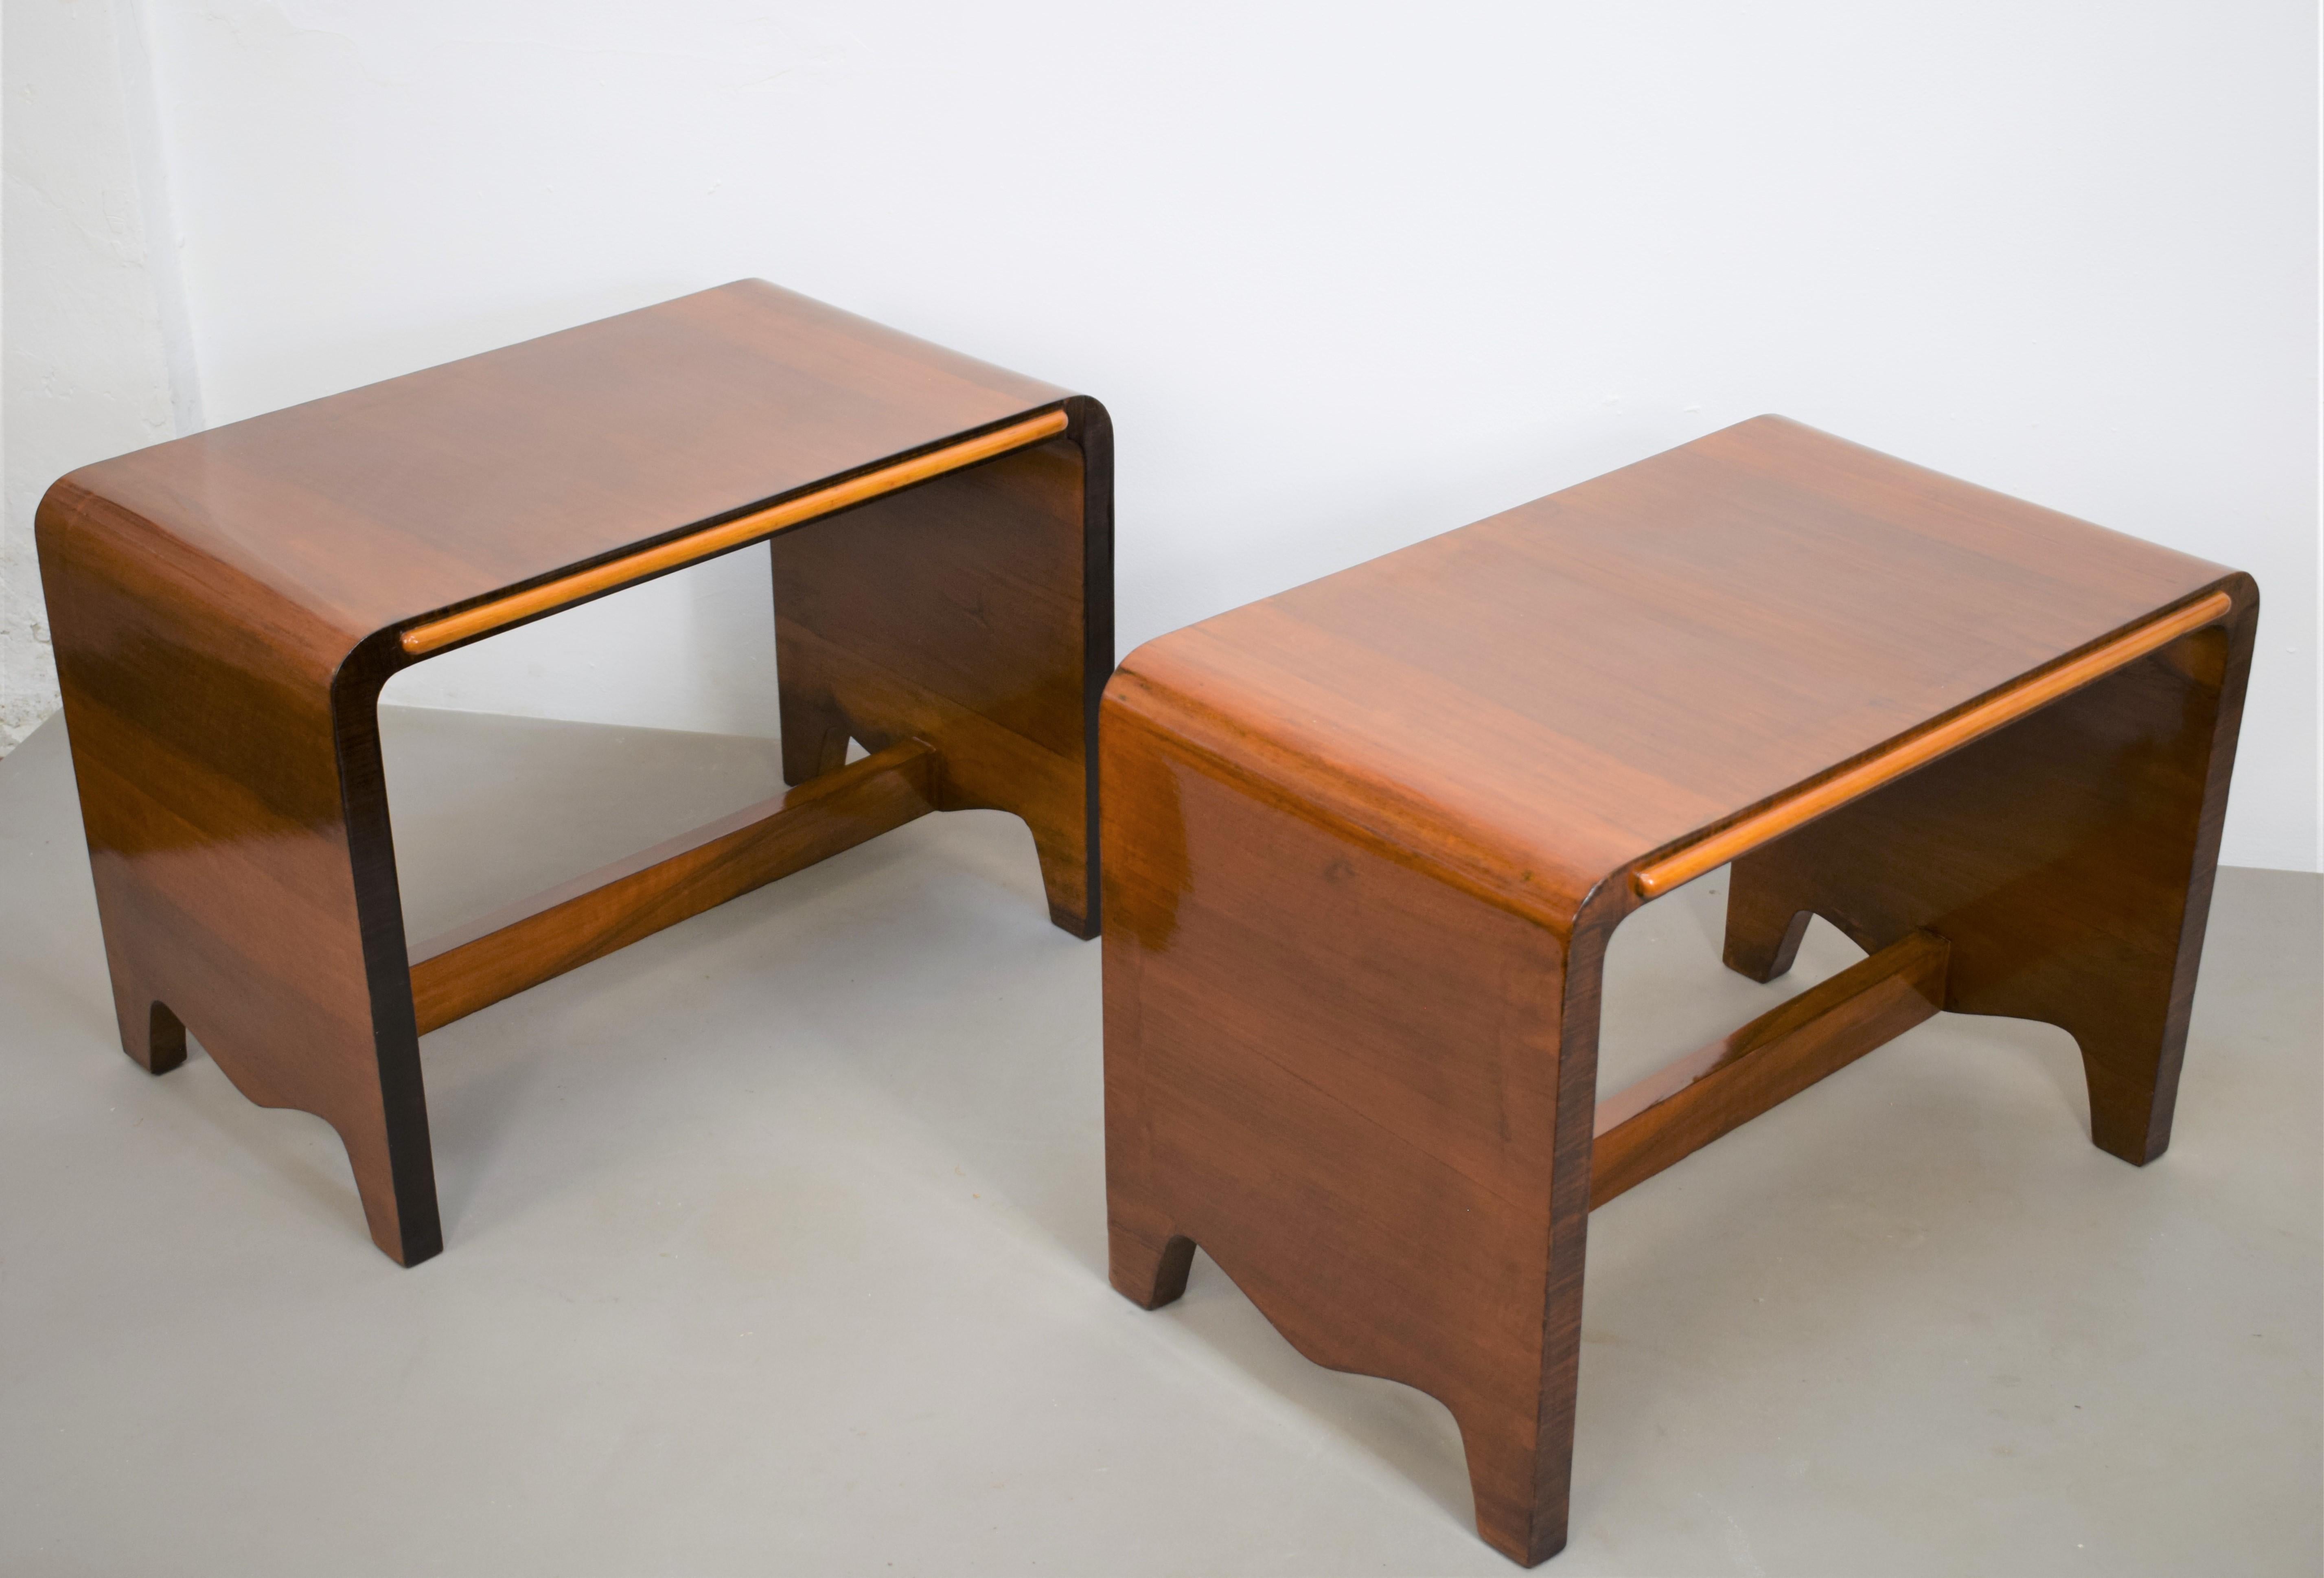 Pair of Italian benches, 1940s.

Dimensions: H= 46 cm; W= 65 cm; D= 40 cm.